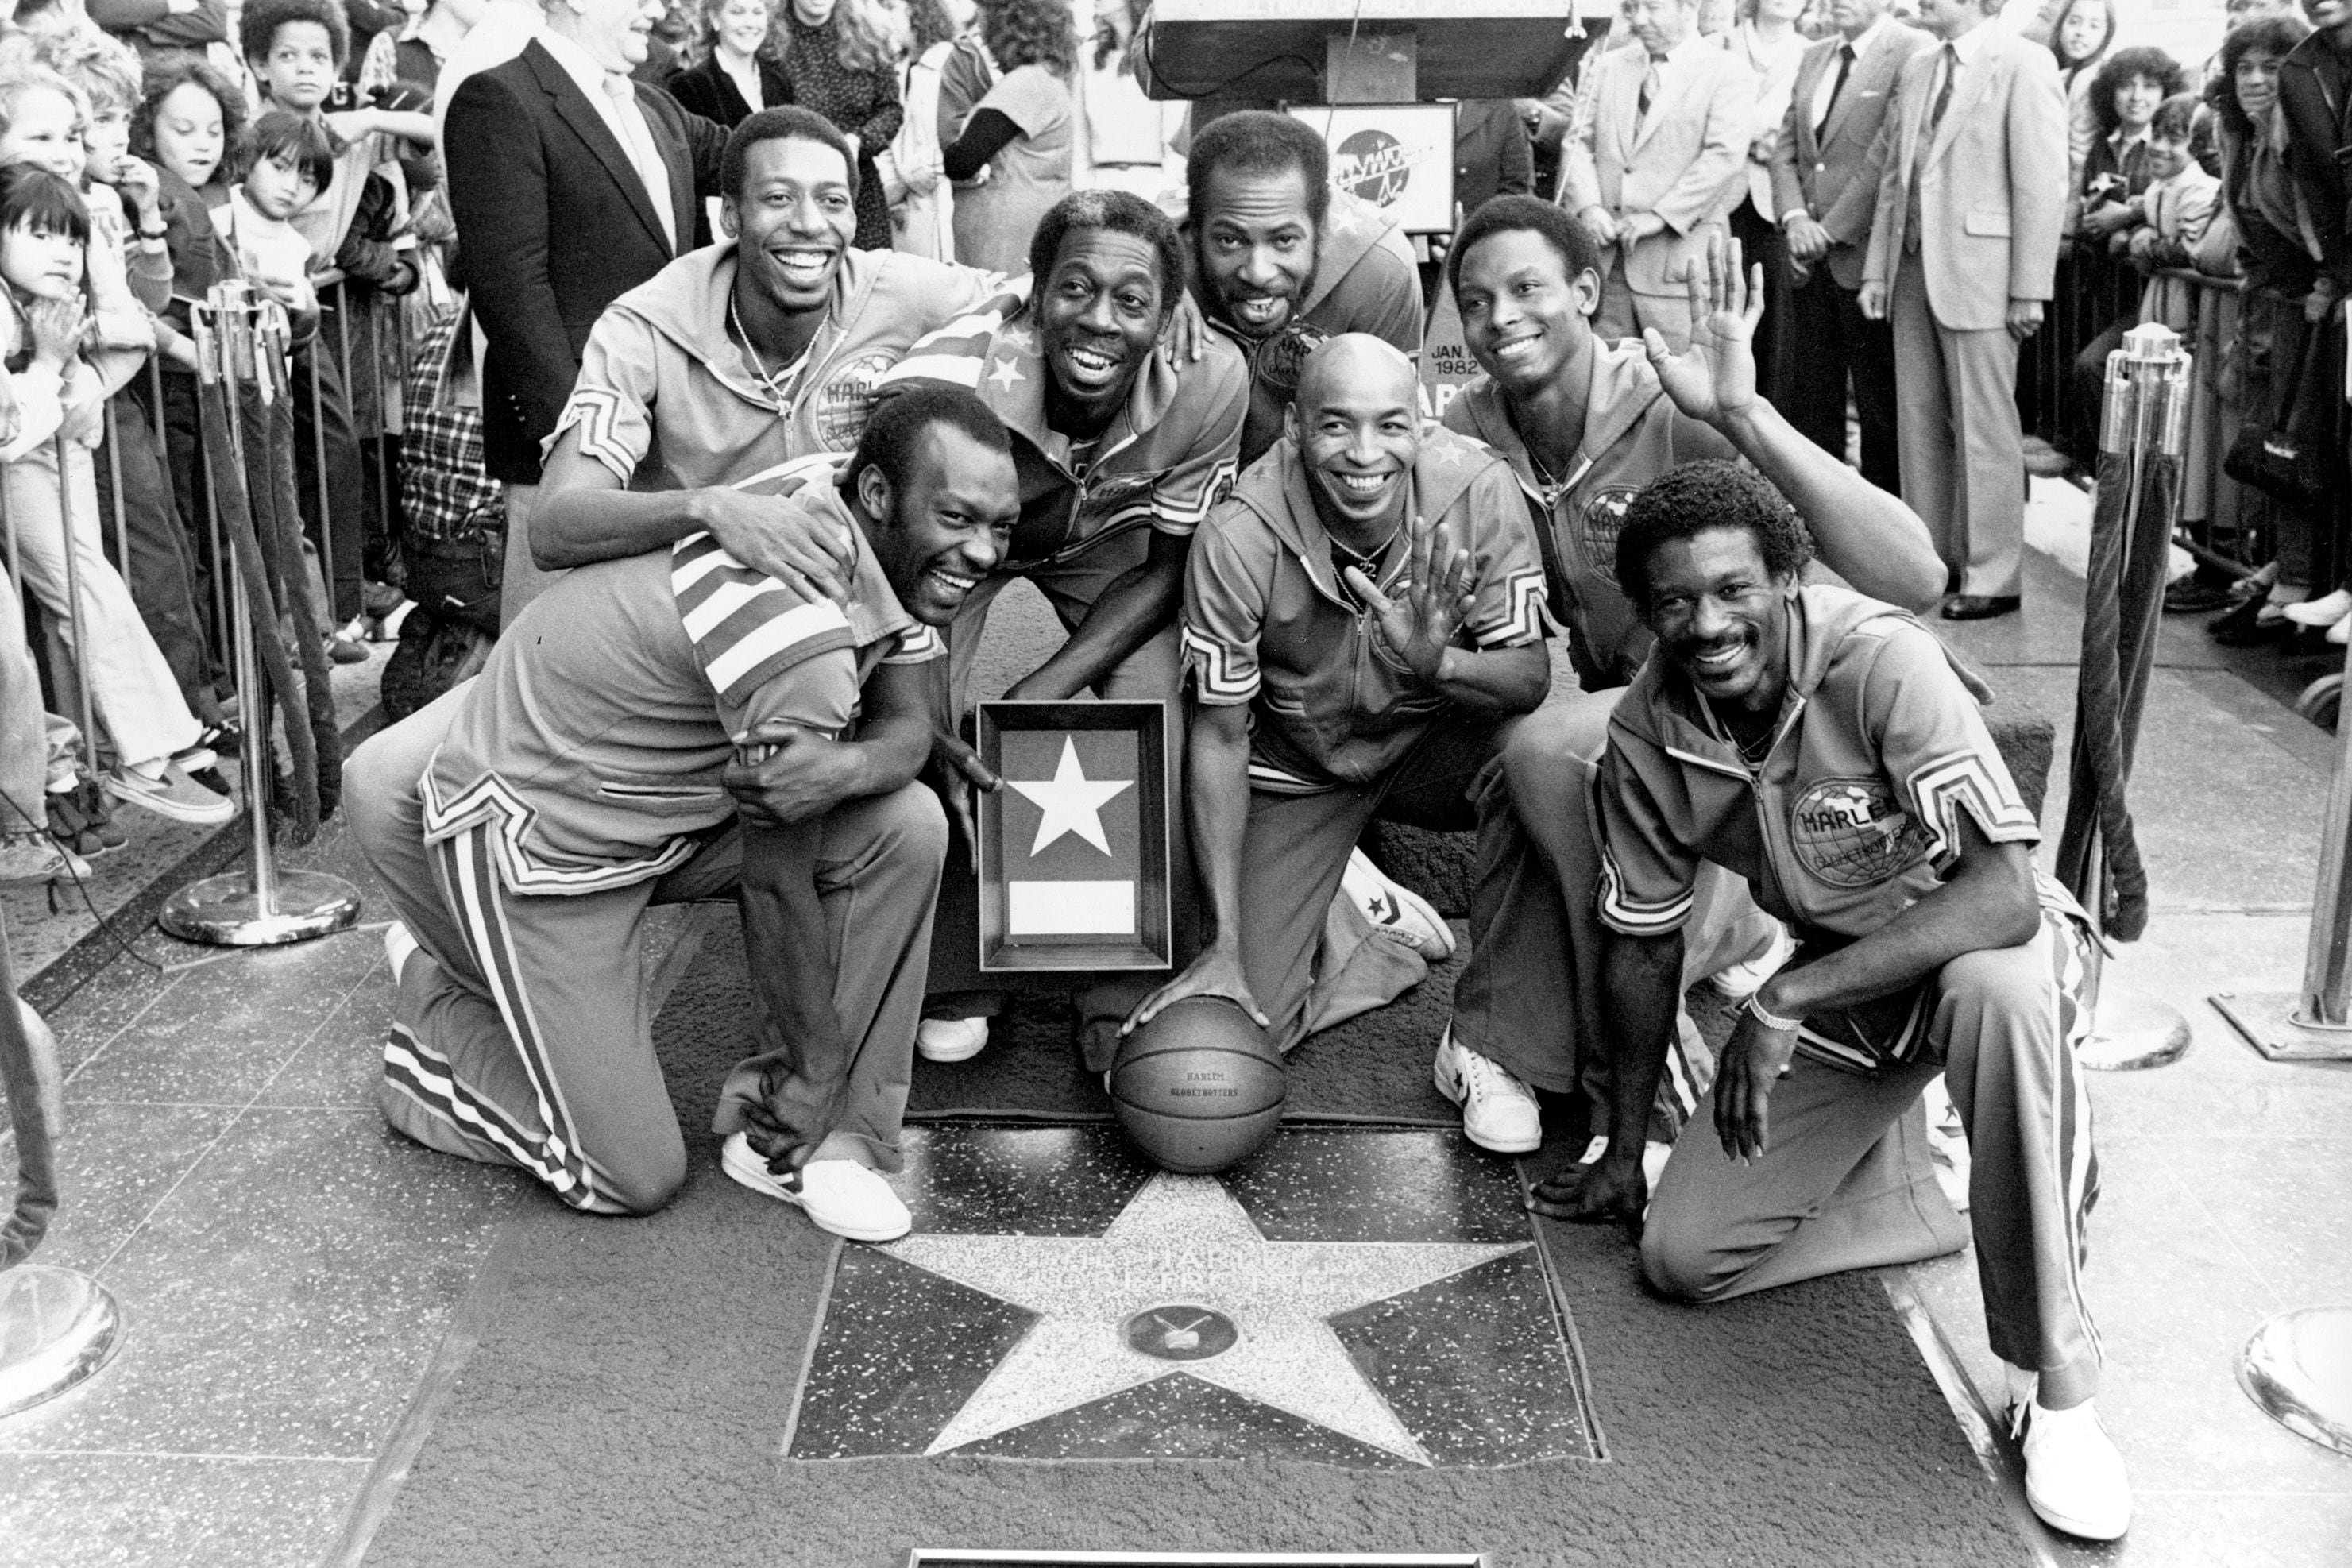 El equipo de los Harlem Globetrotters devela su estrella en el Paseo de la Fama de Hollywood, en Los Ángeles, el 19 de enero de 1982. De izquierda a derecha: Billy Hobley, Dallas Thornton, Hubert "Geese" Ausbie, Nate Branch, Fred "Curly" Neal, Robert Paige y Larry "Gator" Rivers. (Foto: AP/Lennox McLendon, archivo)